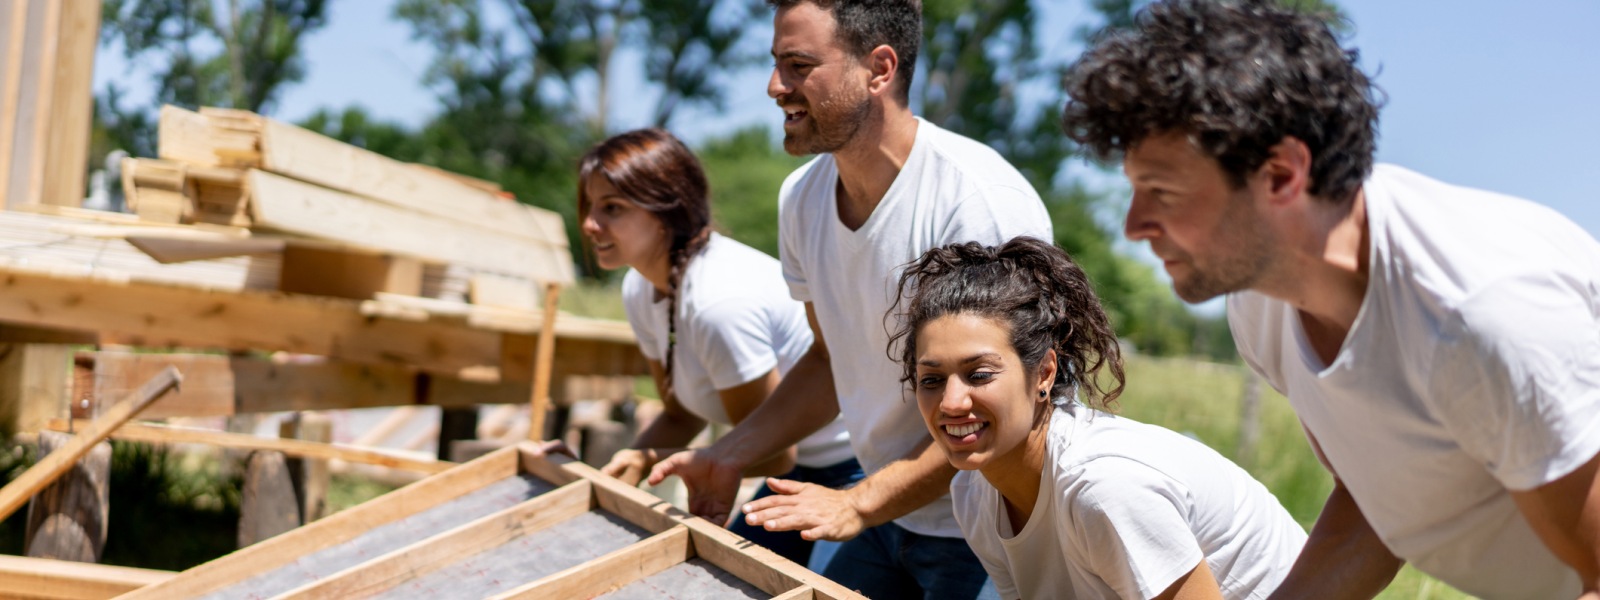 Een groep vrijwilligers op een bouwplaats.